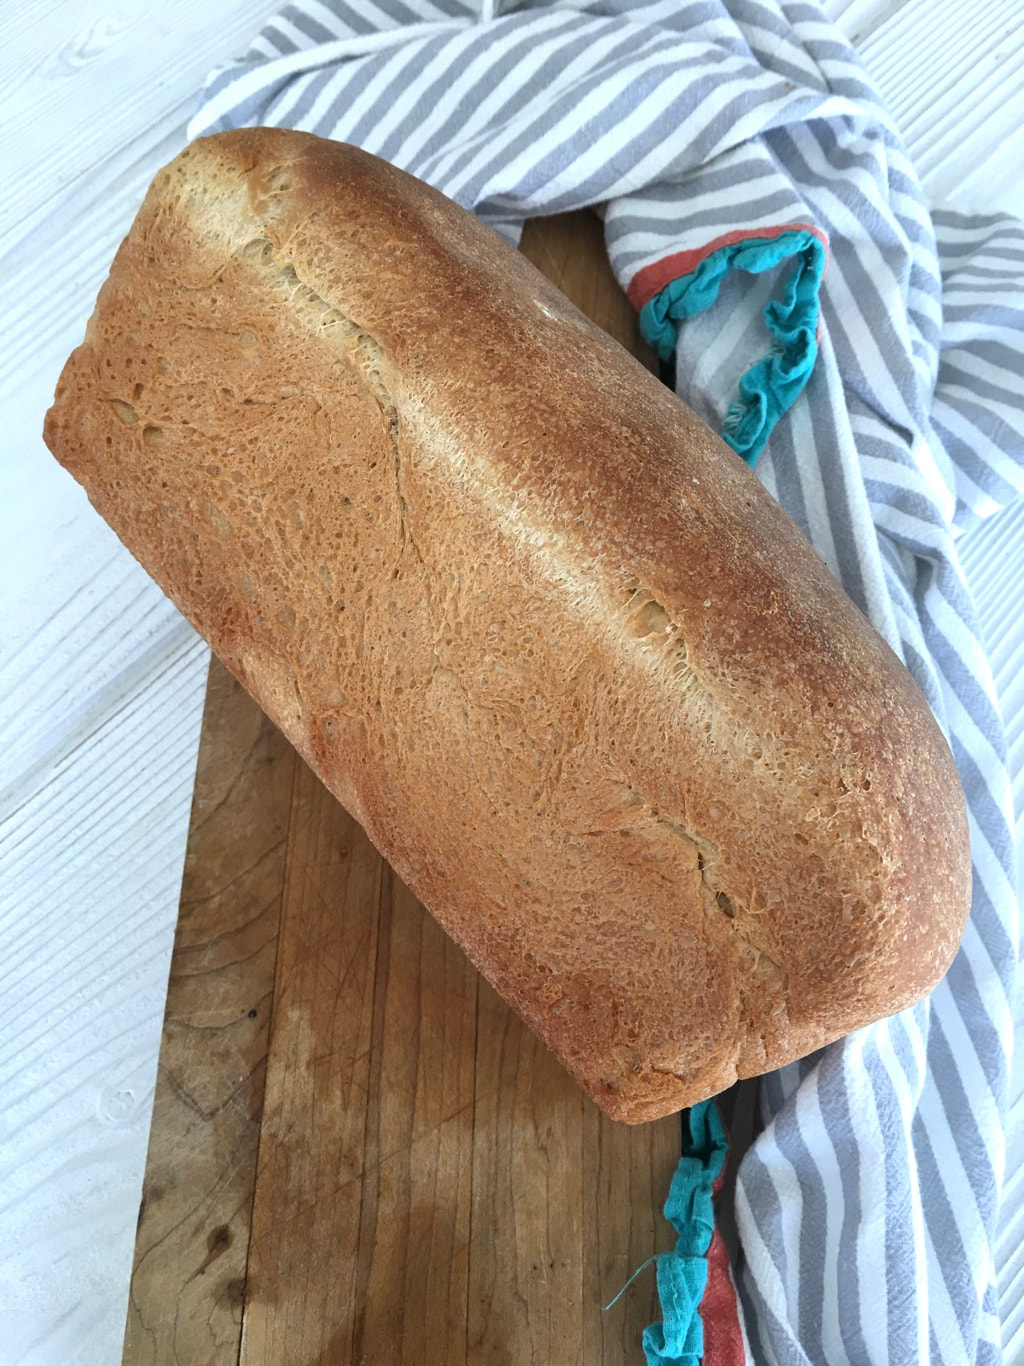 Easy Homemade (Bread Machine) Bread